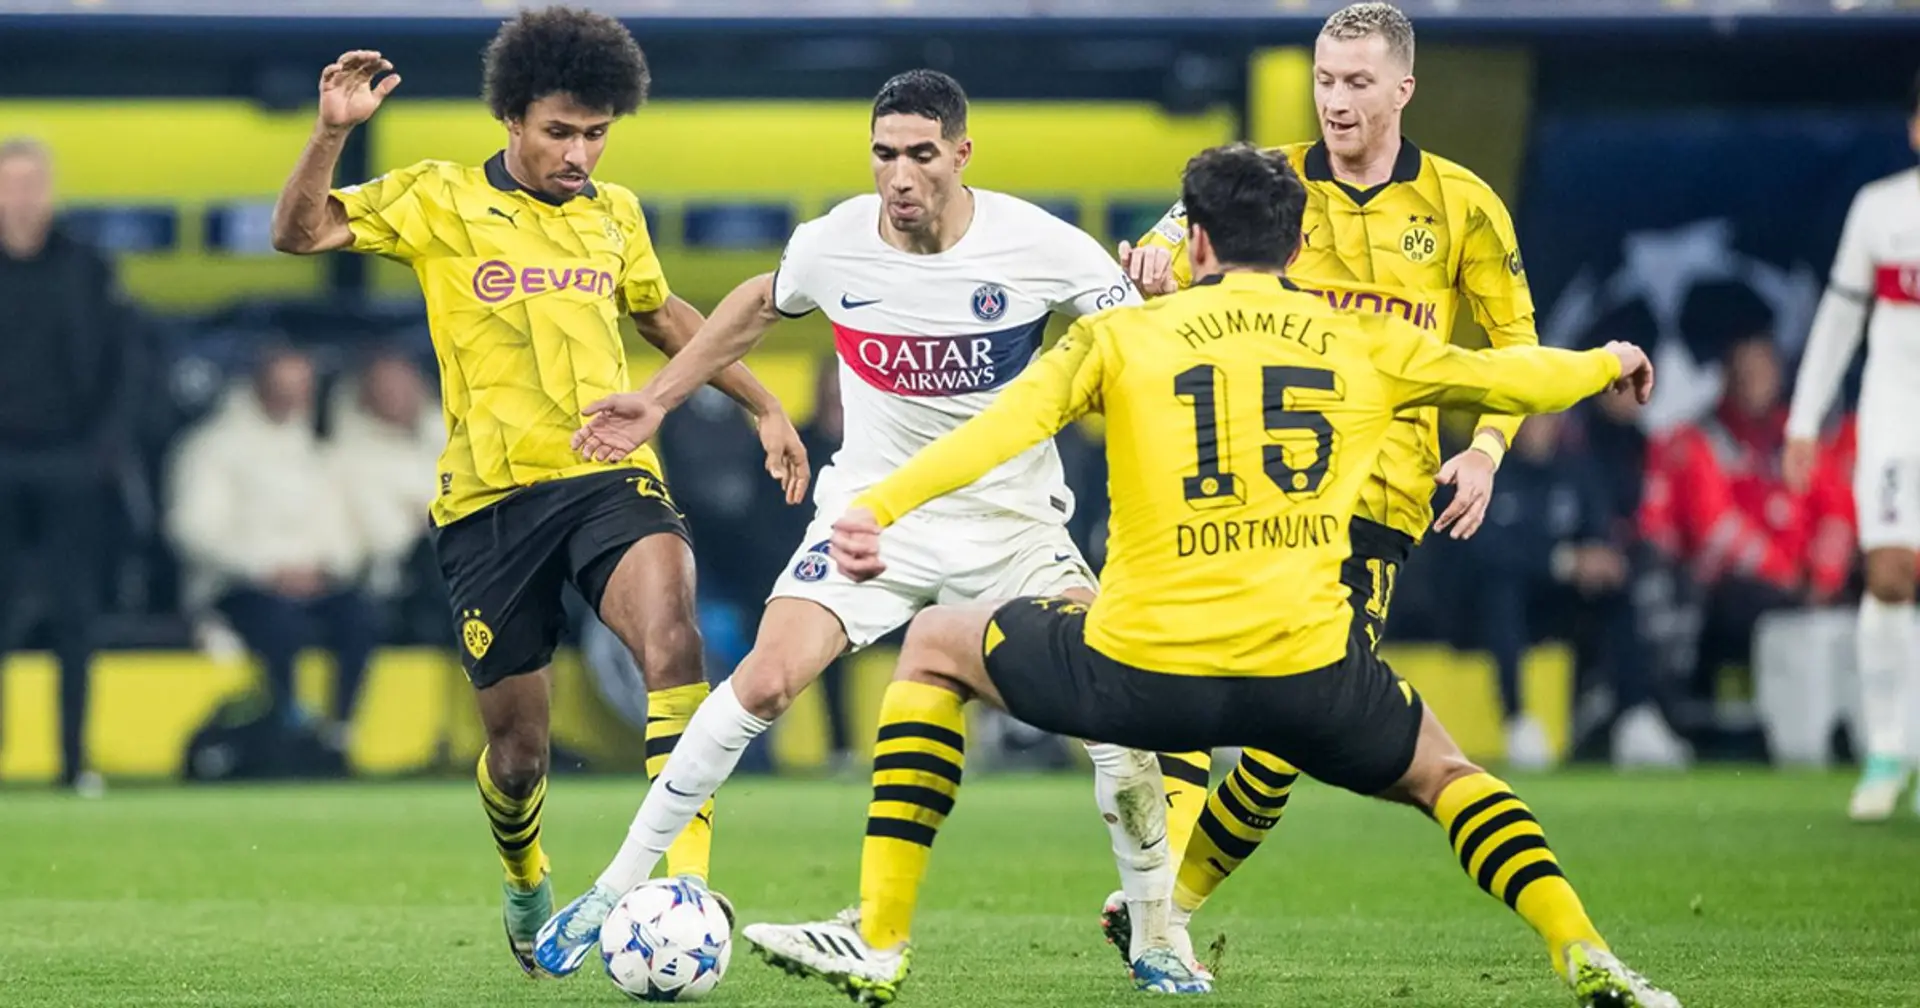 Gutes Vorzeichen? Dortmund hat gegen PSG noch nie ein Heimspiel verloren